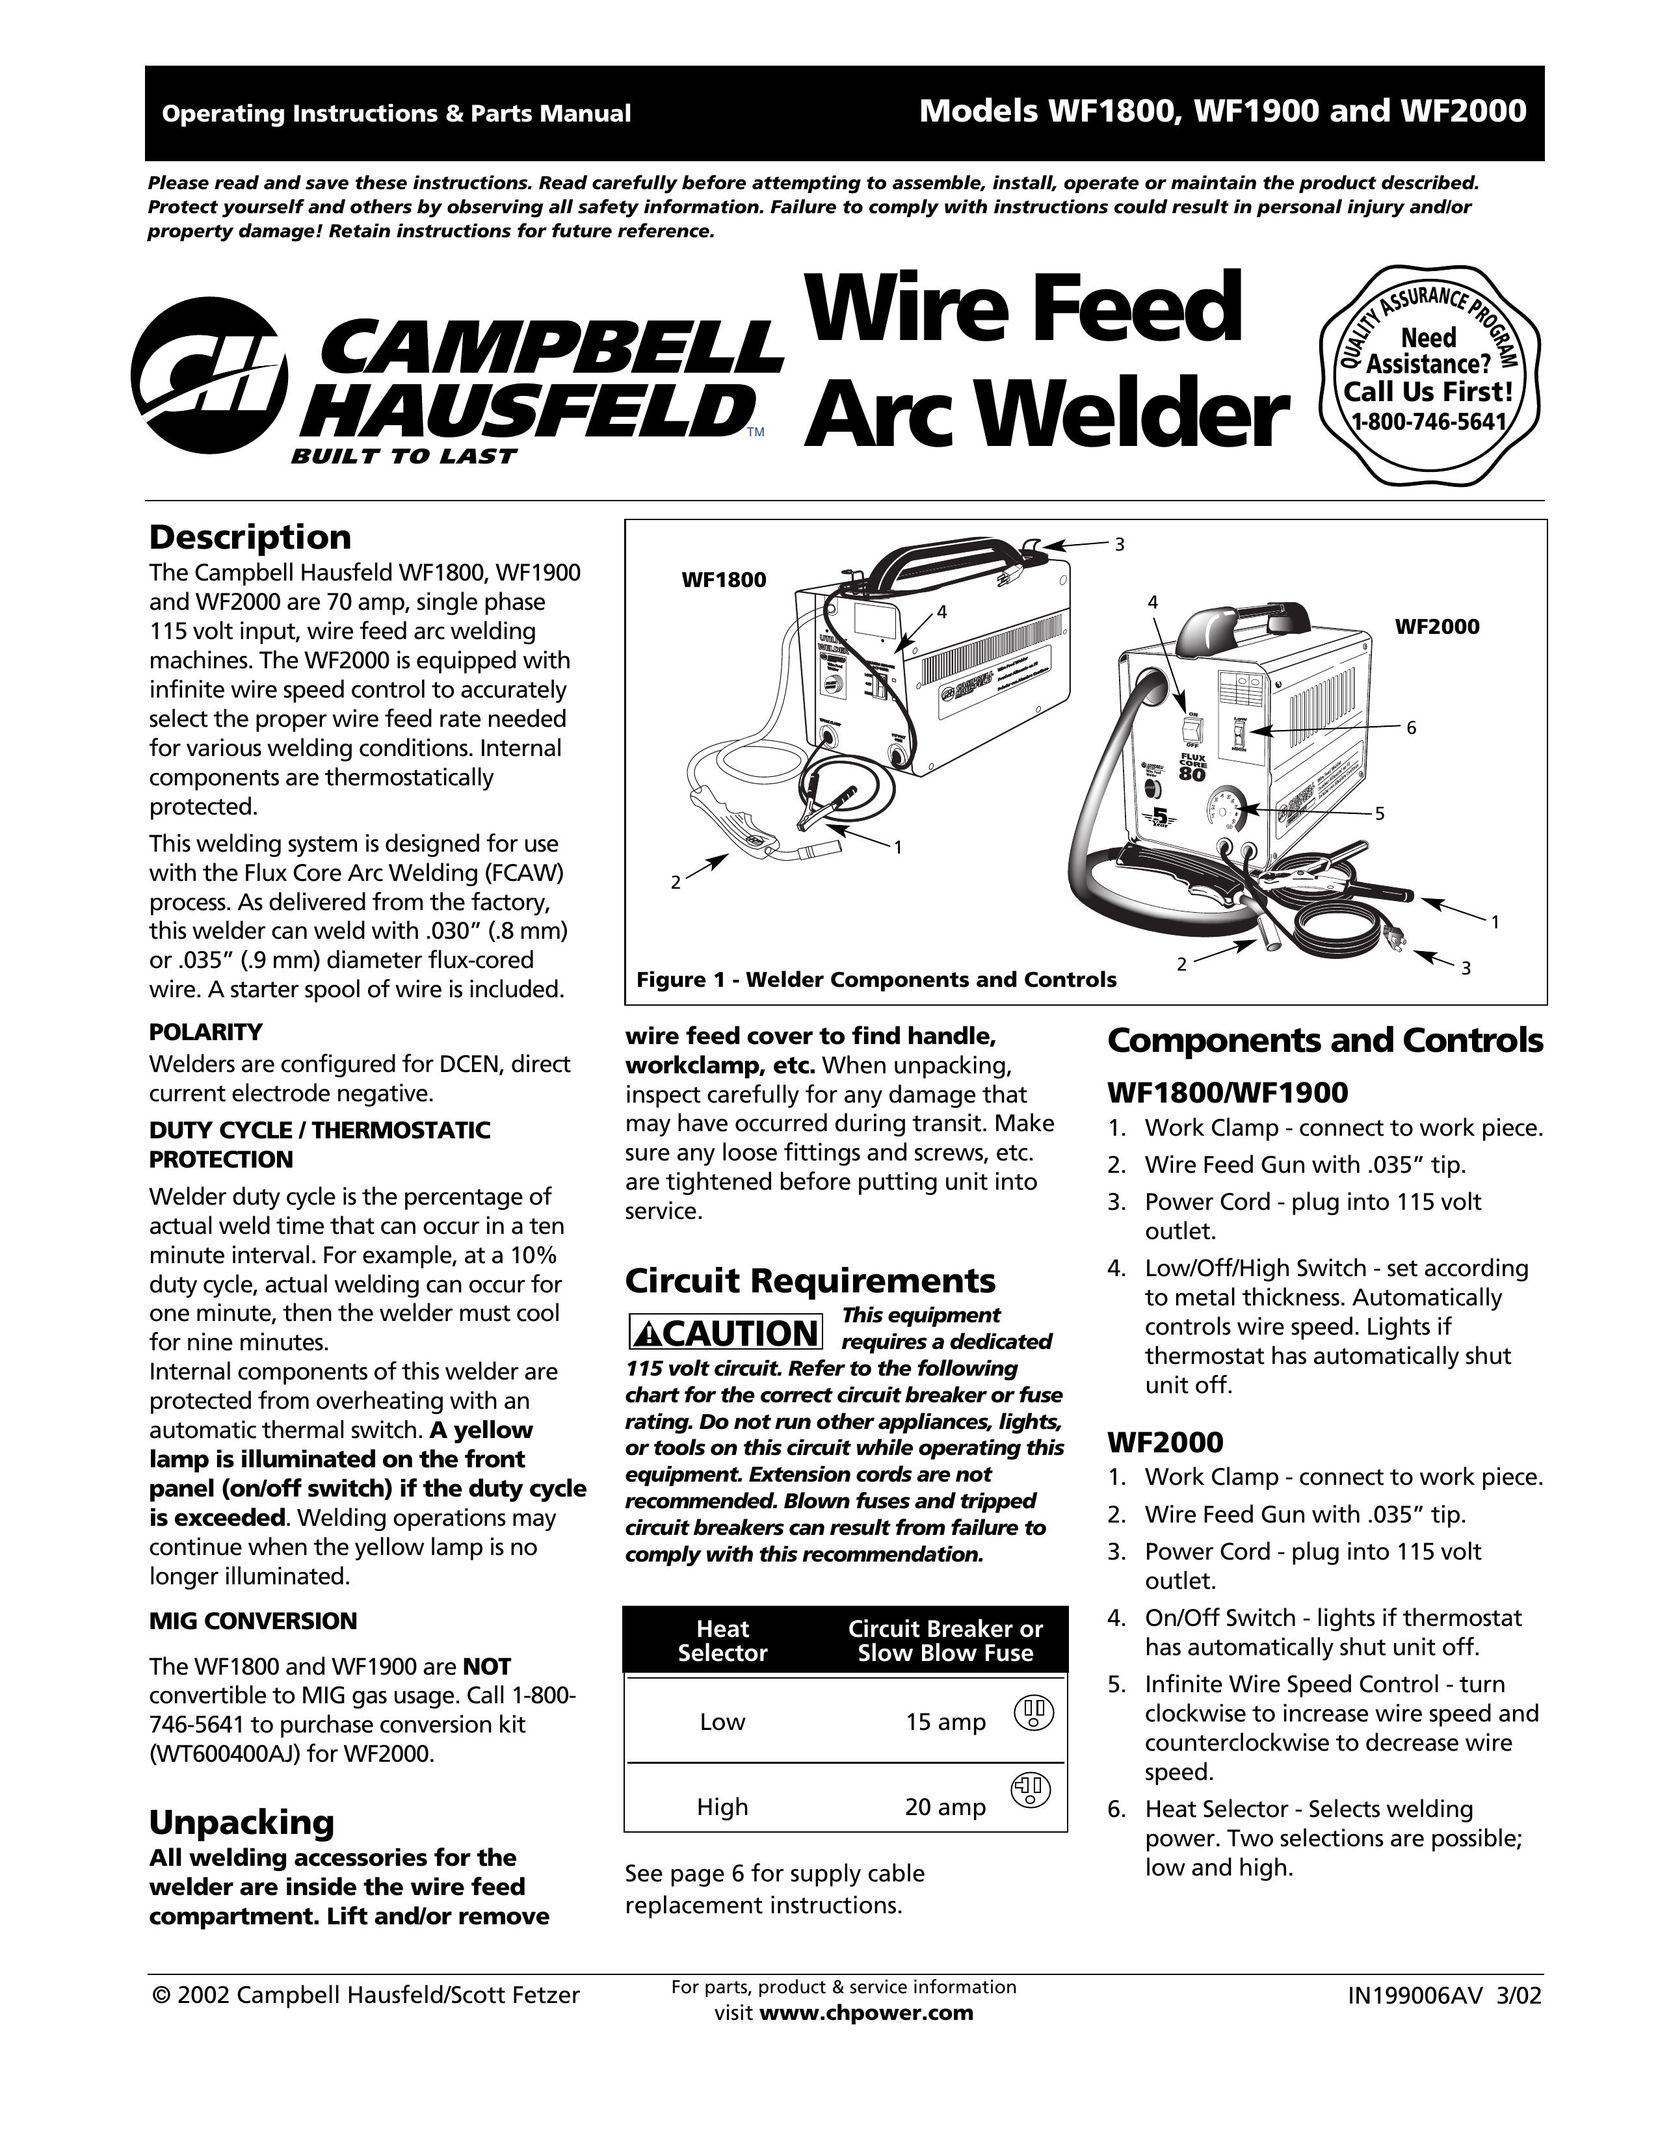 Campbell Hausfeld WF1900 Welder User Manual